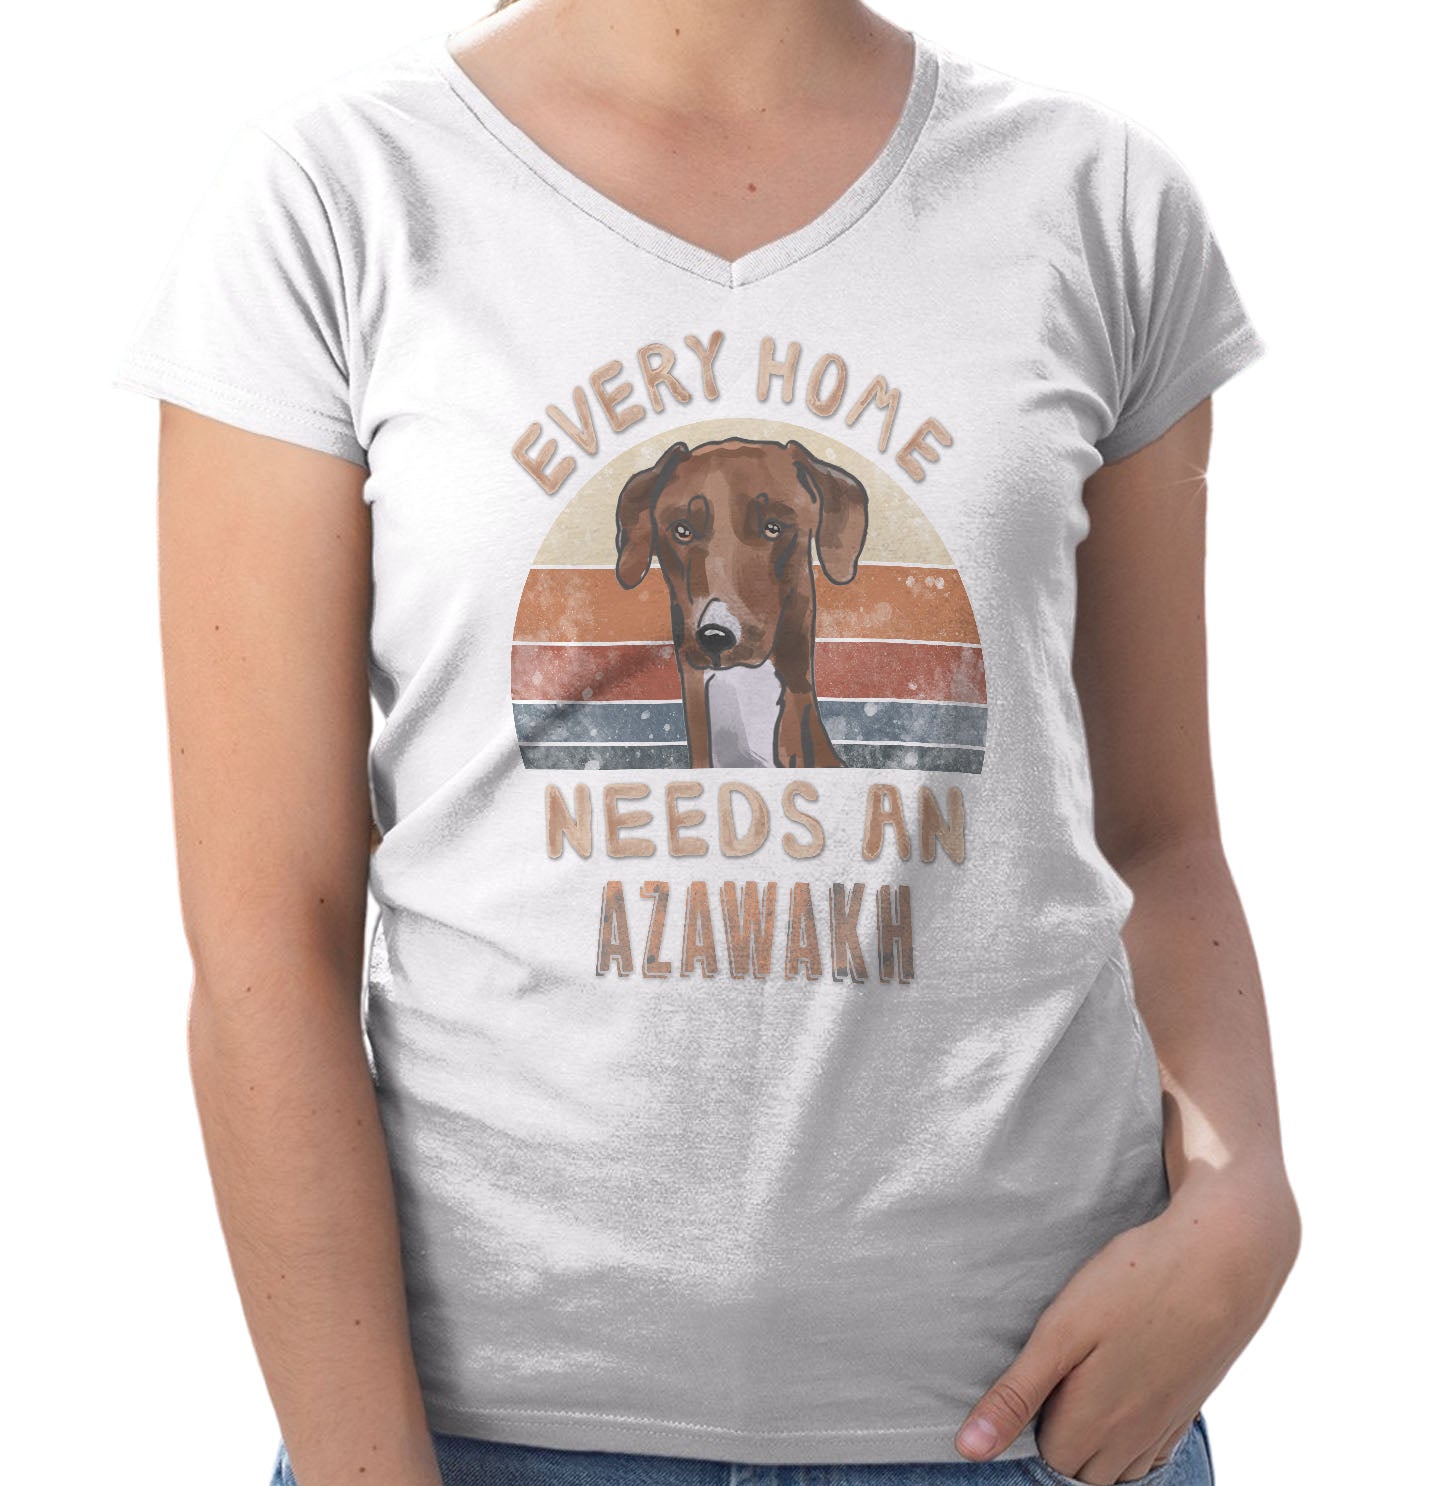 Every Home Needs a Azawakh - Women's V-Neck T-Shirt